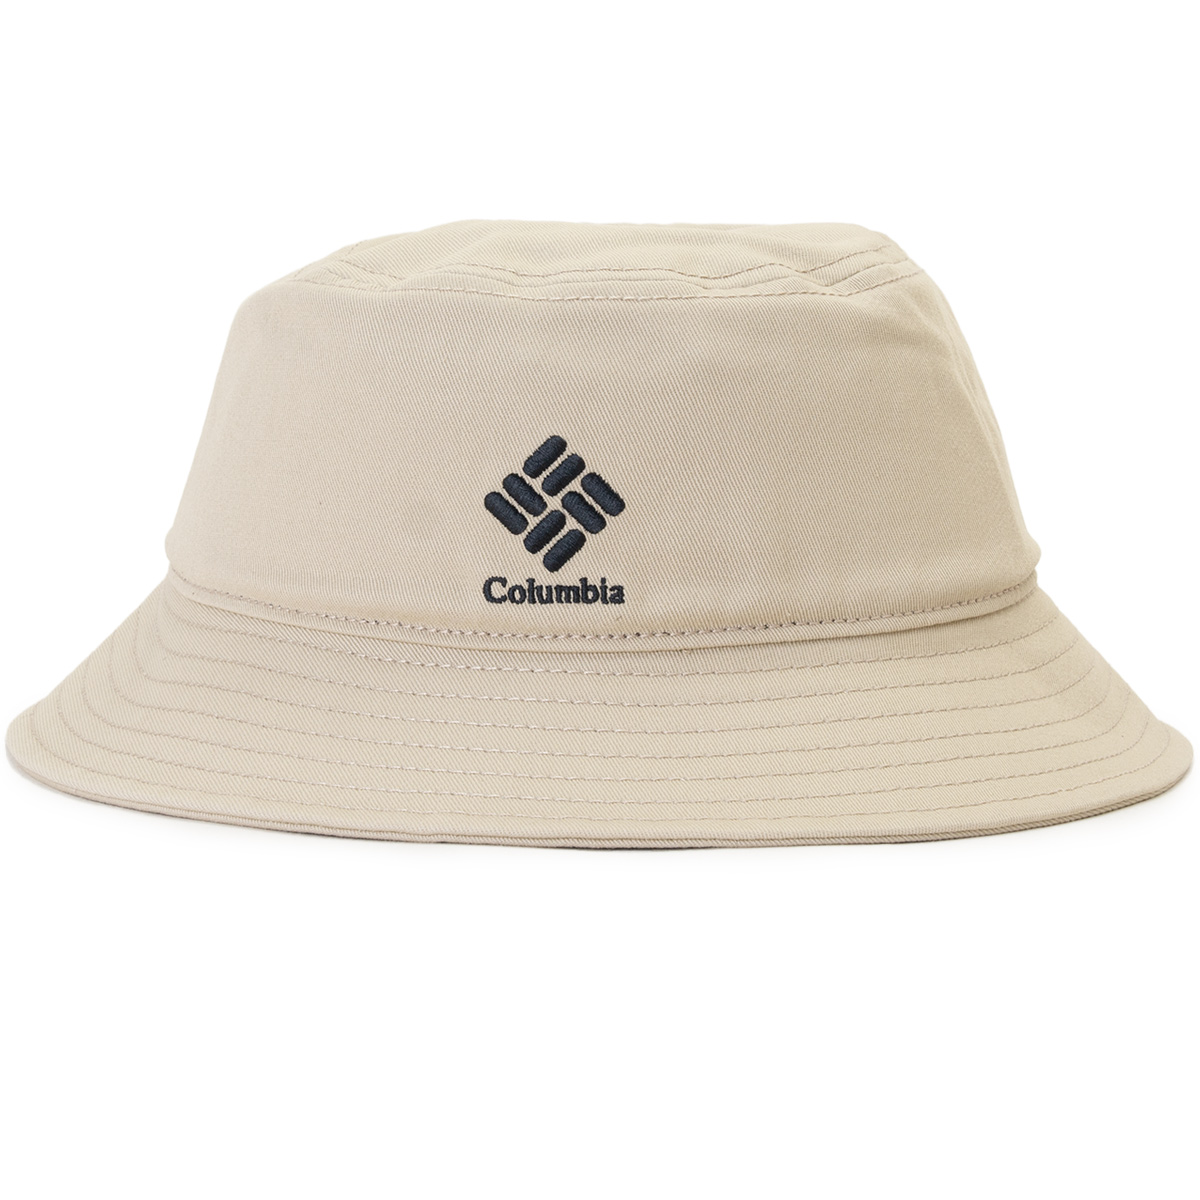 帽子 Columbia コロンビア COBB CREST BUCKET コブクレスト バケット 